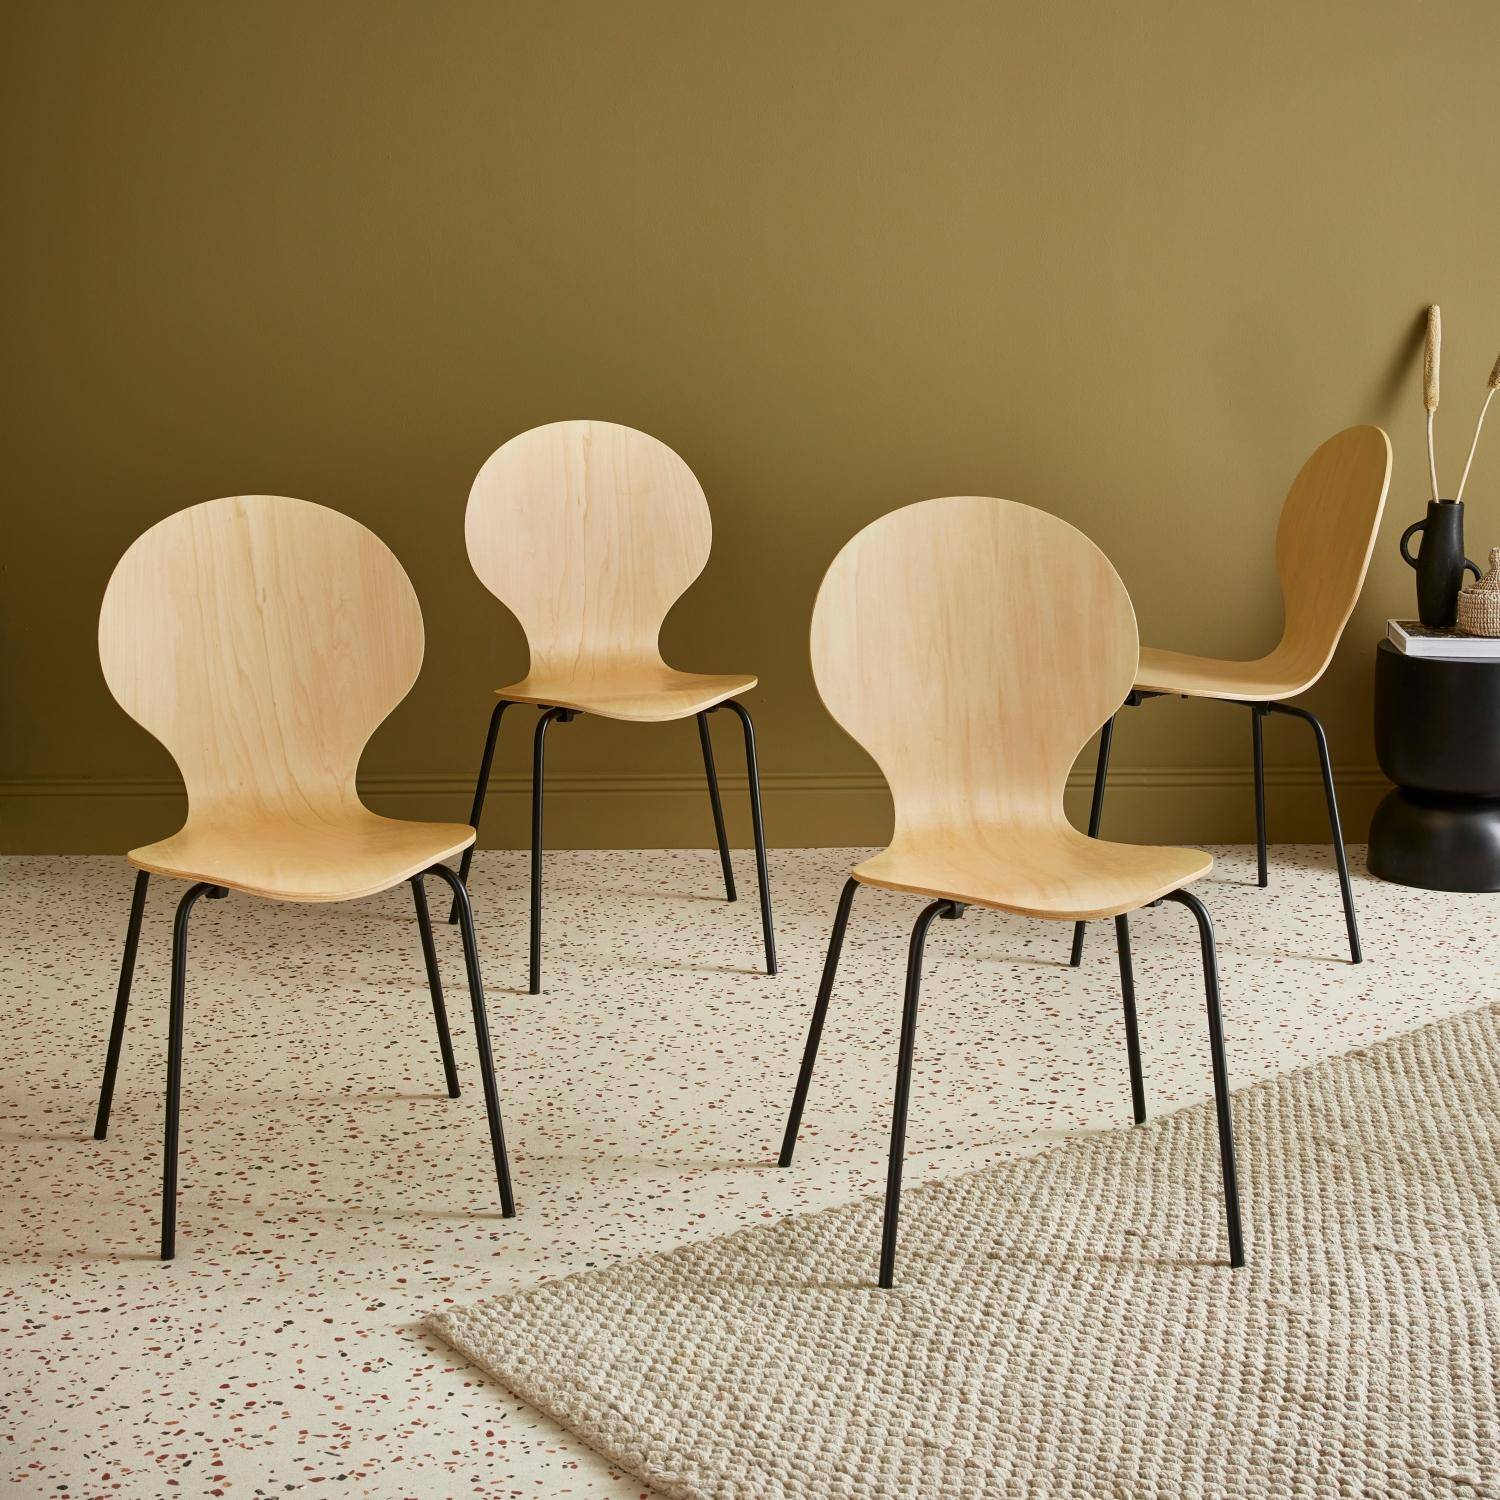 Lot de 4 chaises naturelles, rétro empilables, bois d'hévéa et contreplaqué, pieds en acier, Naomi, L 43 x P 48 x H 87cm,sweeek,Photo1